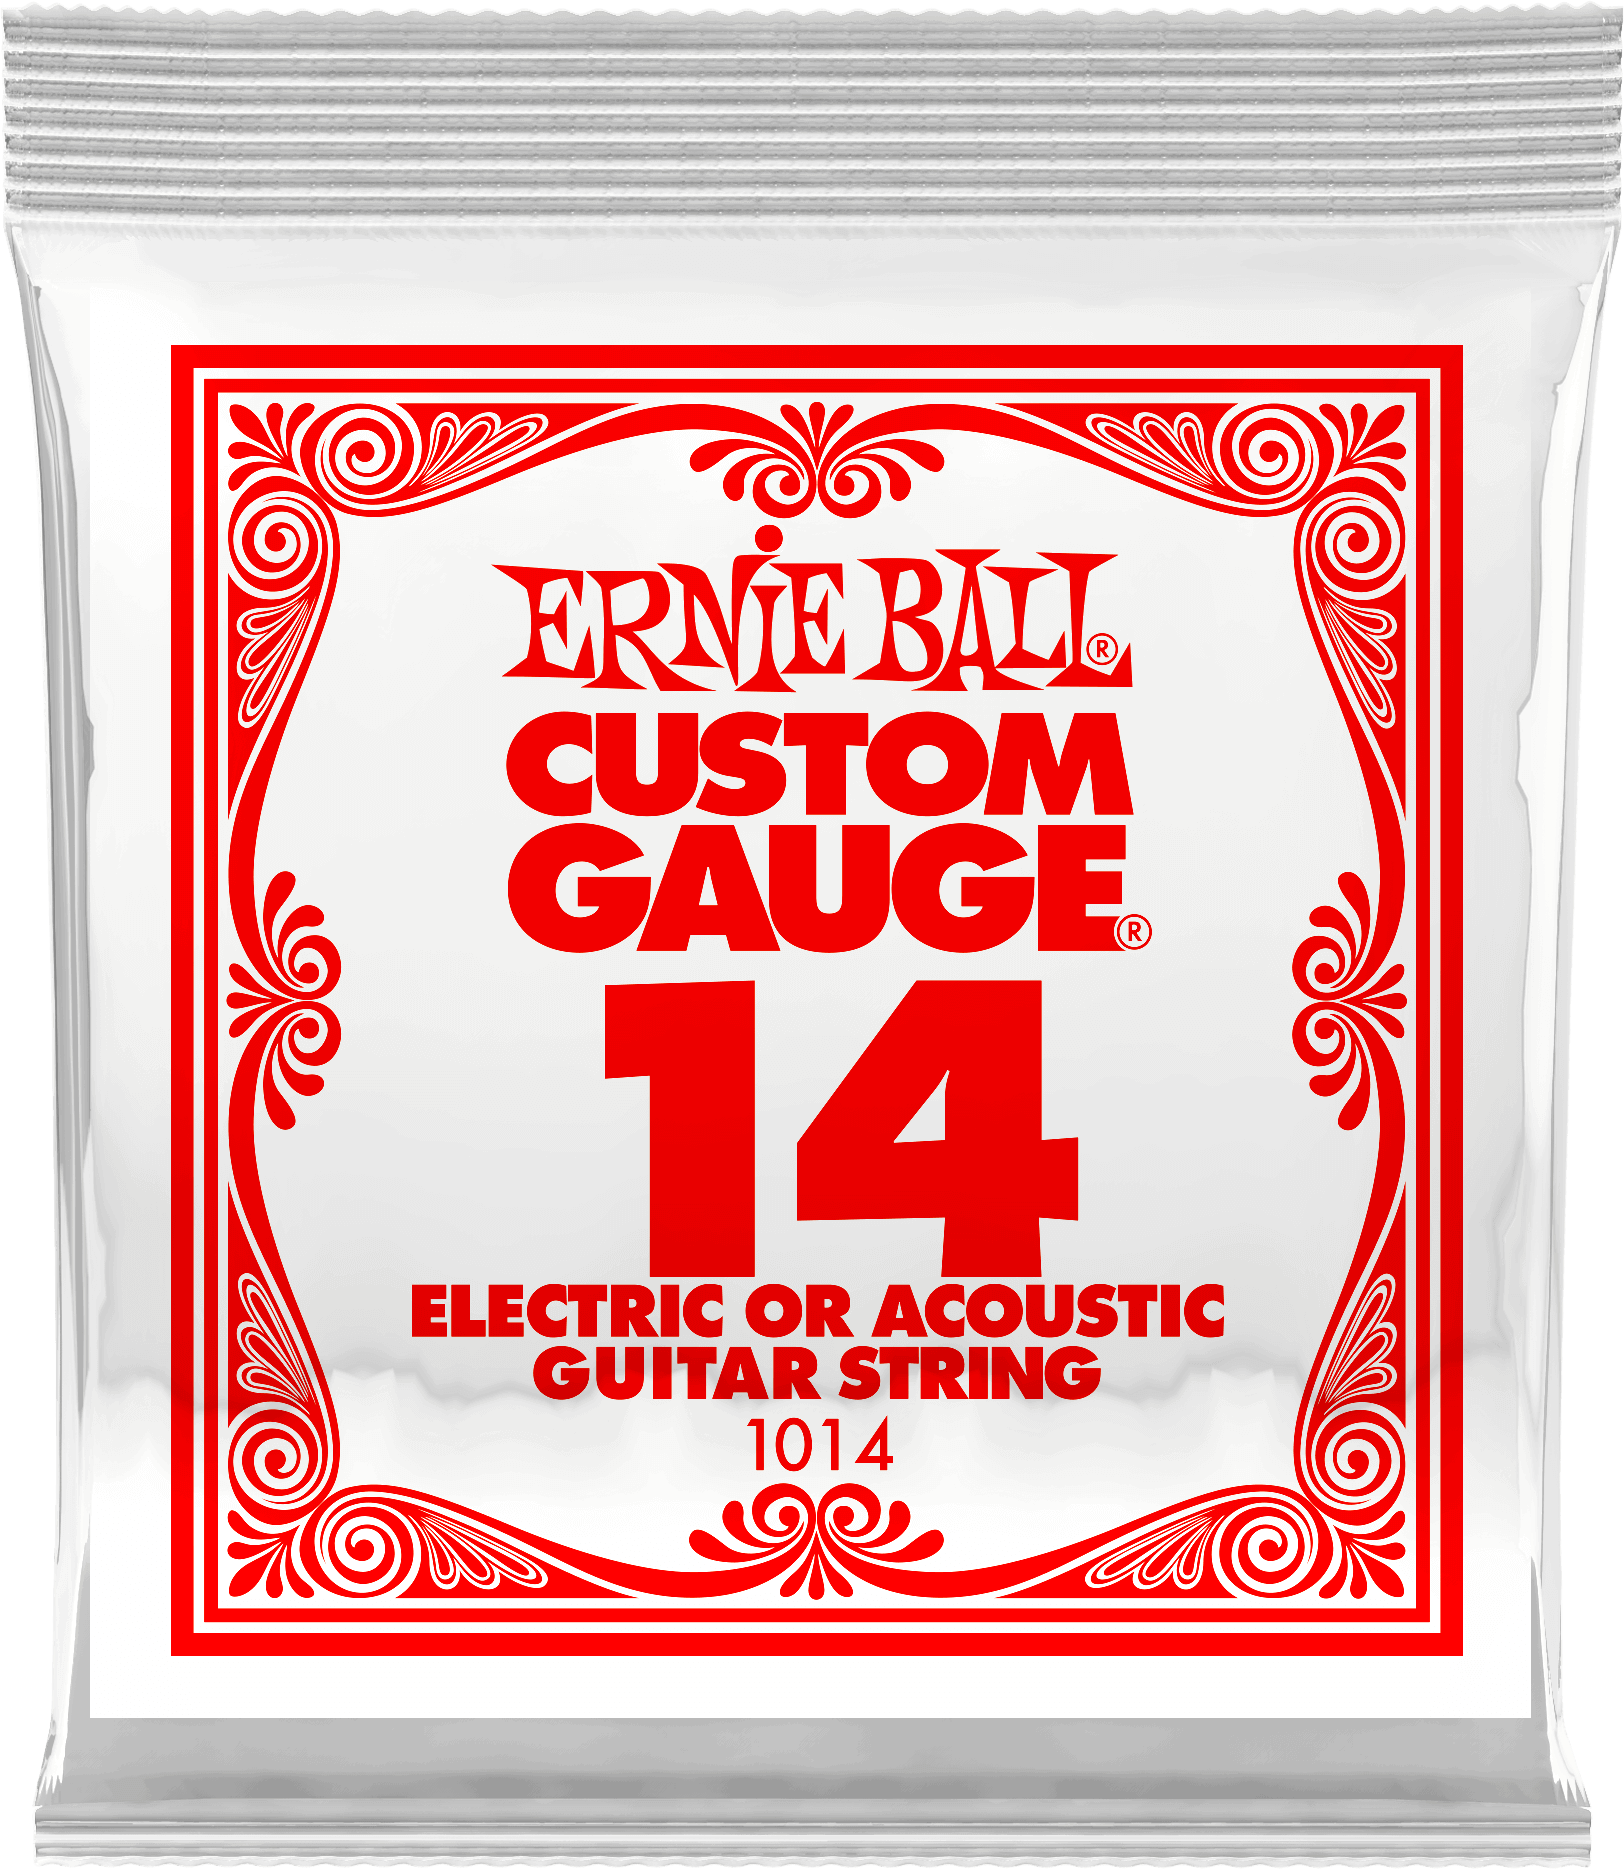 Струна для акустической и электрогитары Ernie Ball P01014 Custom gauge, сталь, калибр 14, Ernie Ball (Эрни Бол)